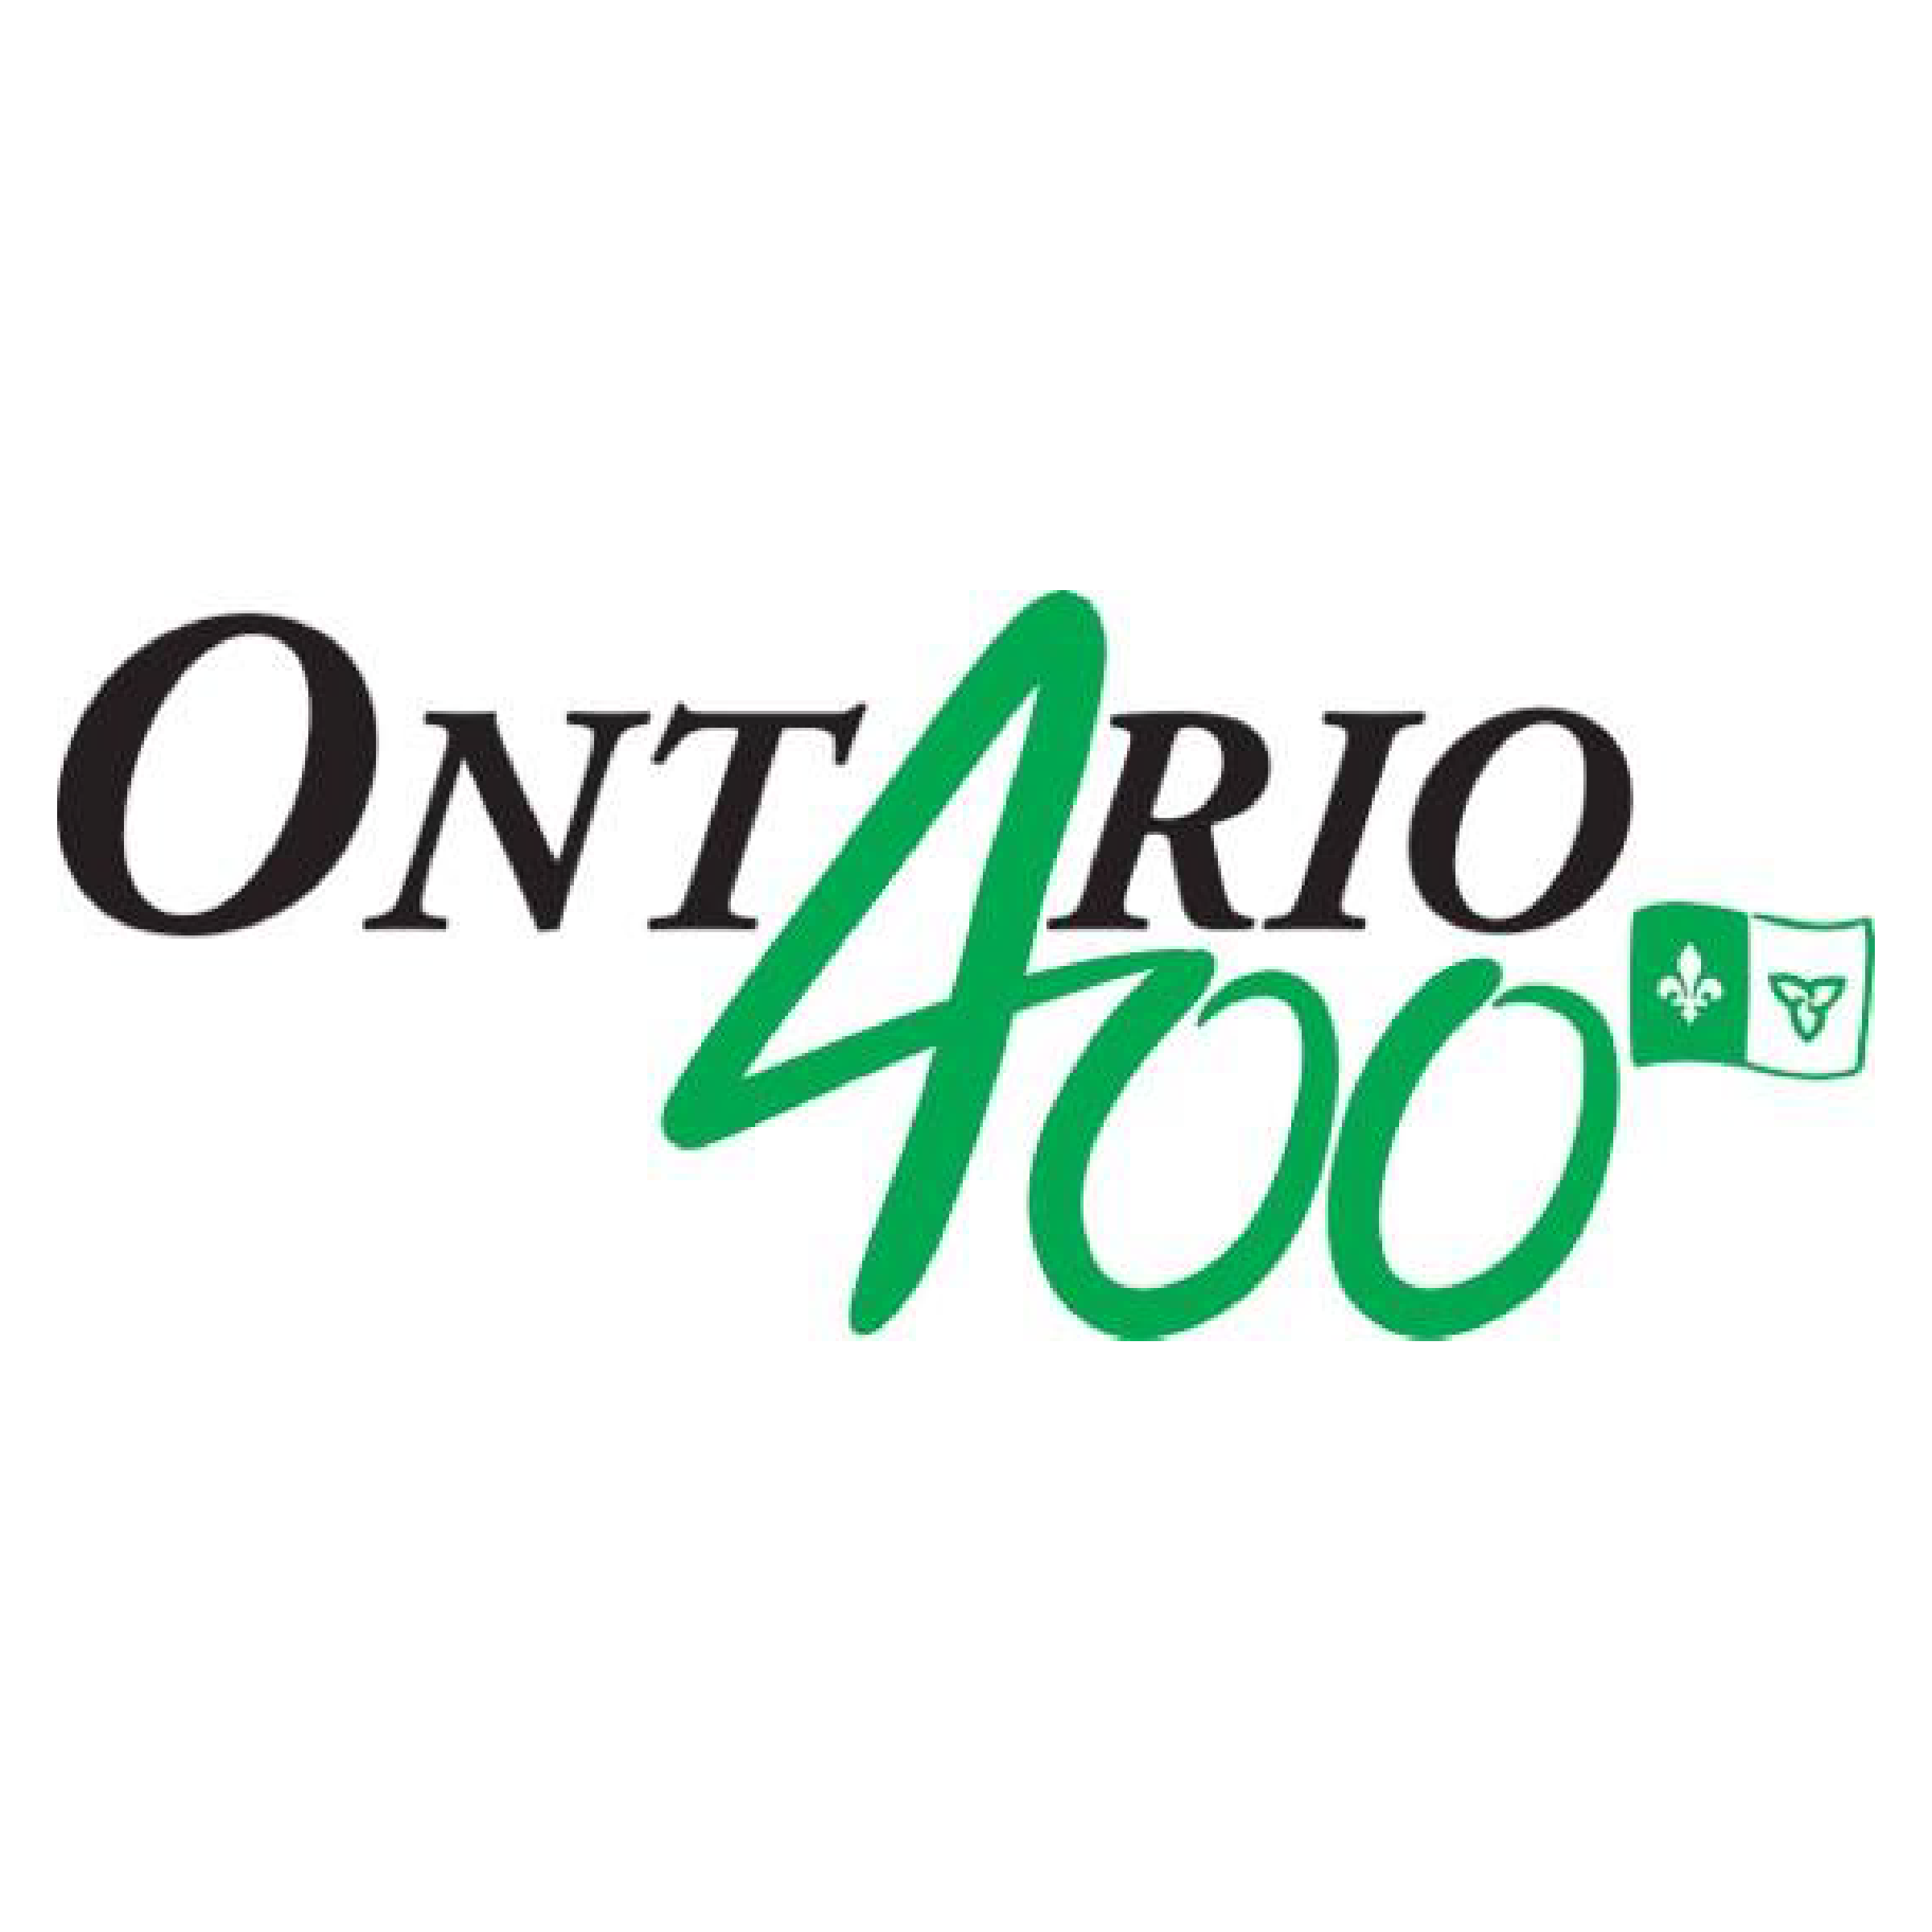 Ce compte Twitter diffusera des renseignements au sujet des activités du volet communautaire du 400e anniversaire de la présence française en Ontario.